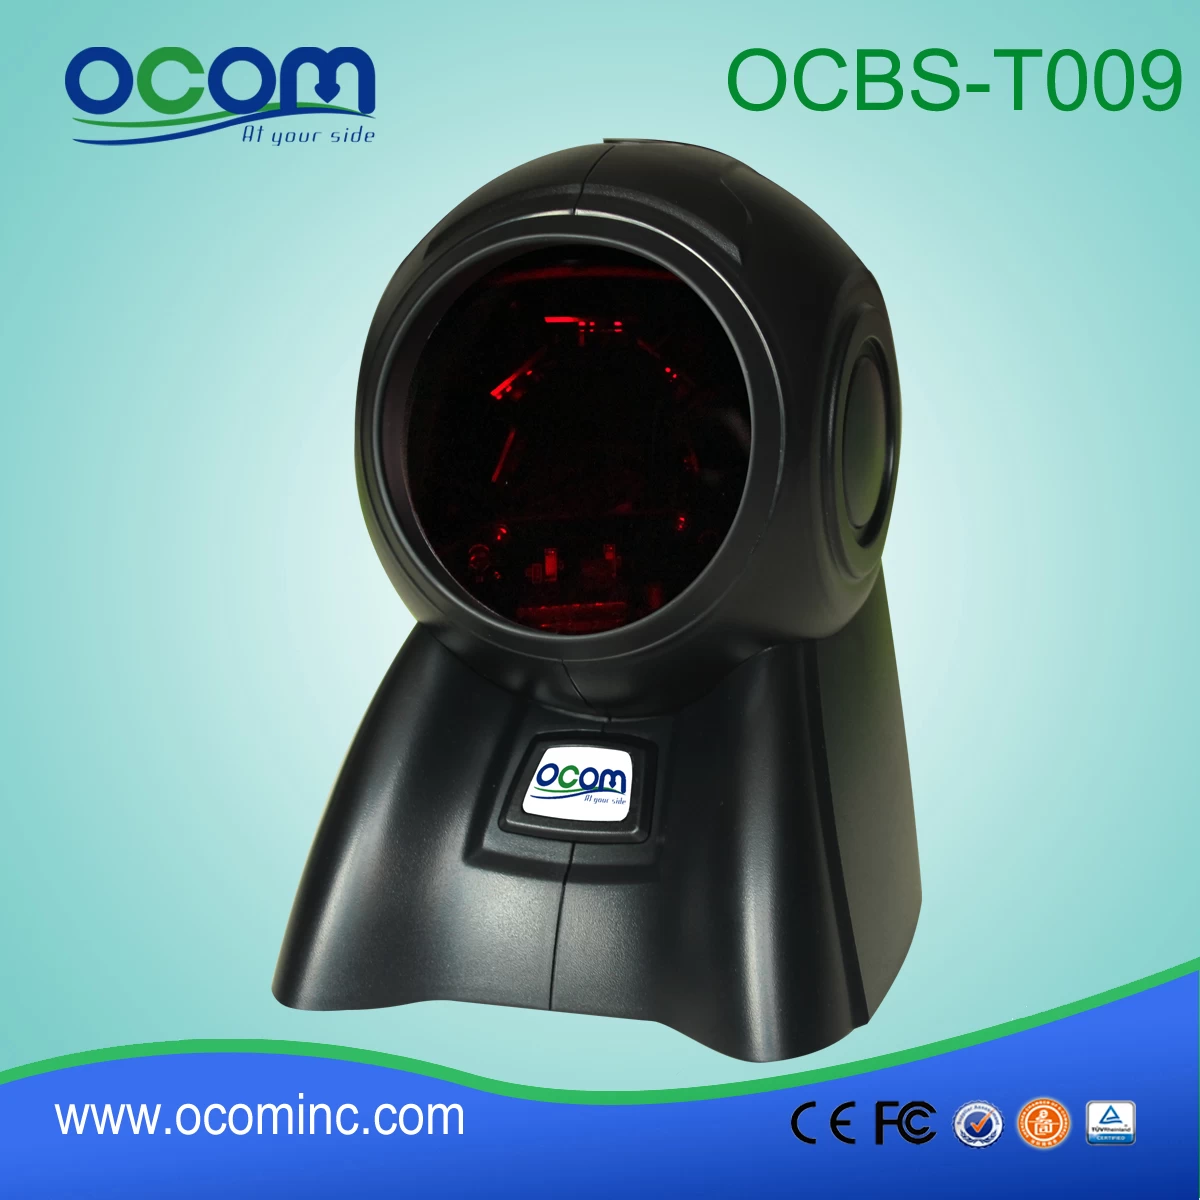 OCBS-T009-Desktop omni-directional auto barcode scanner